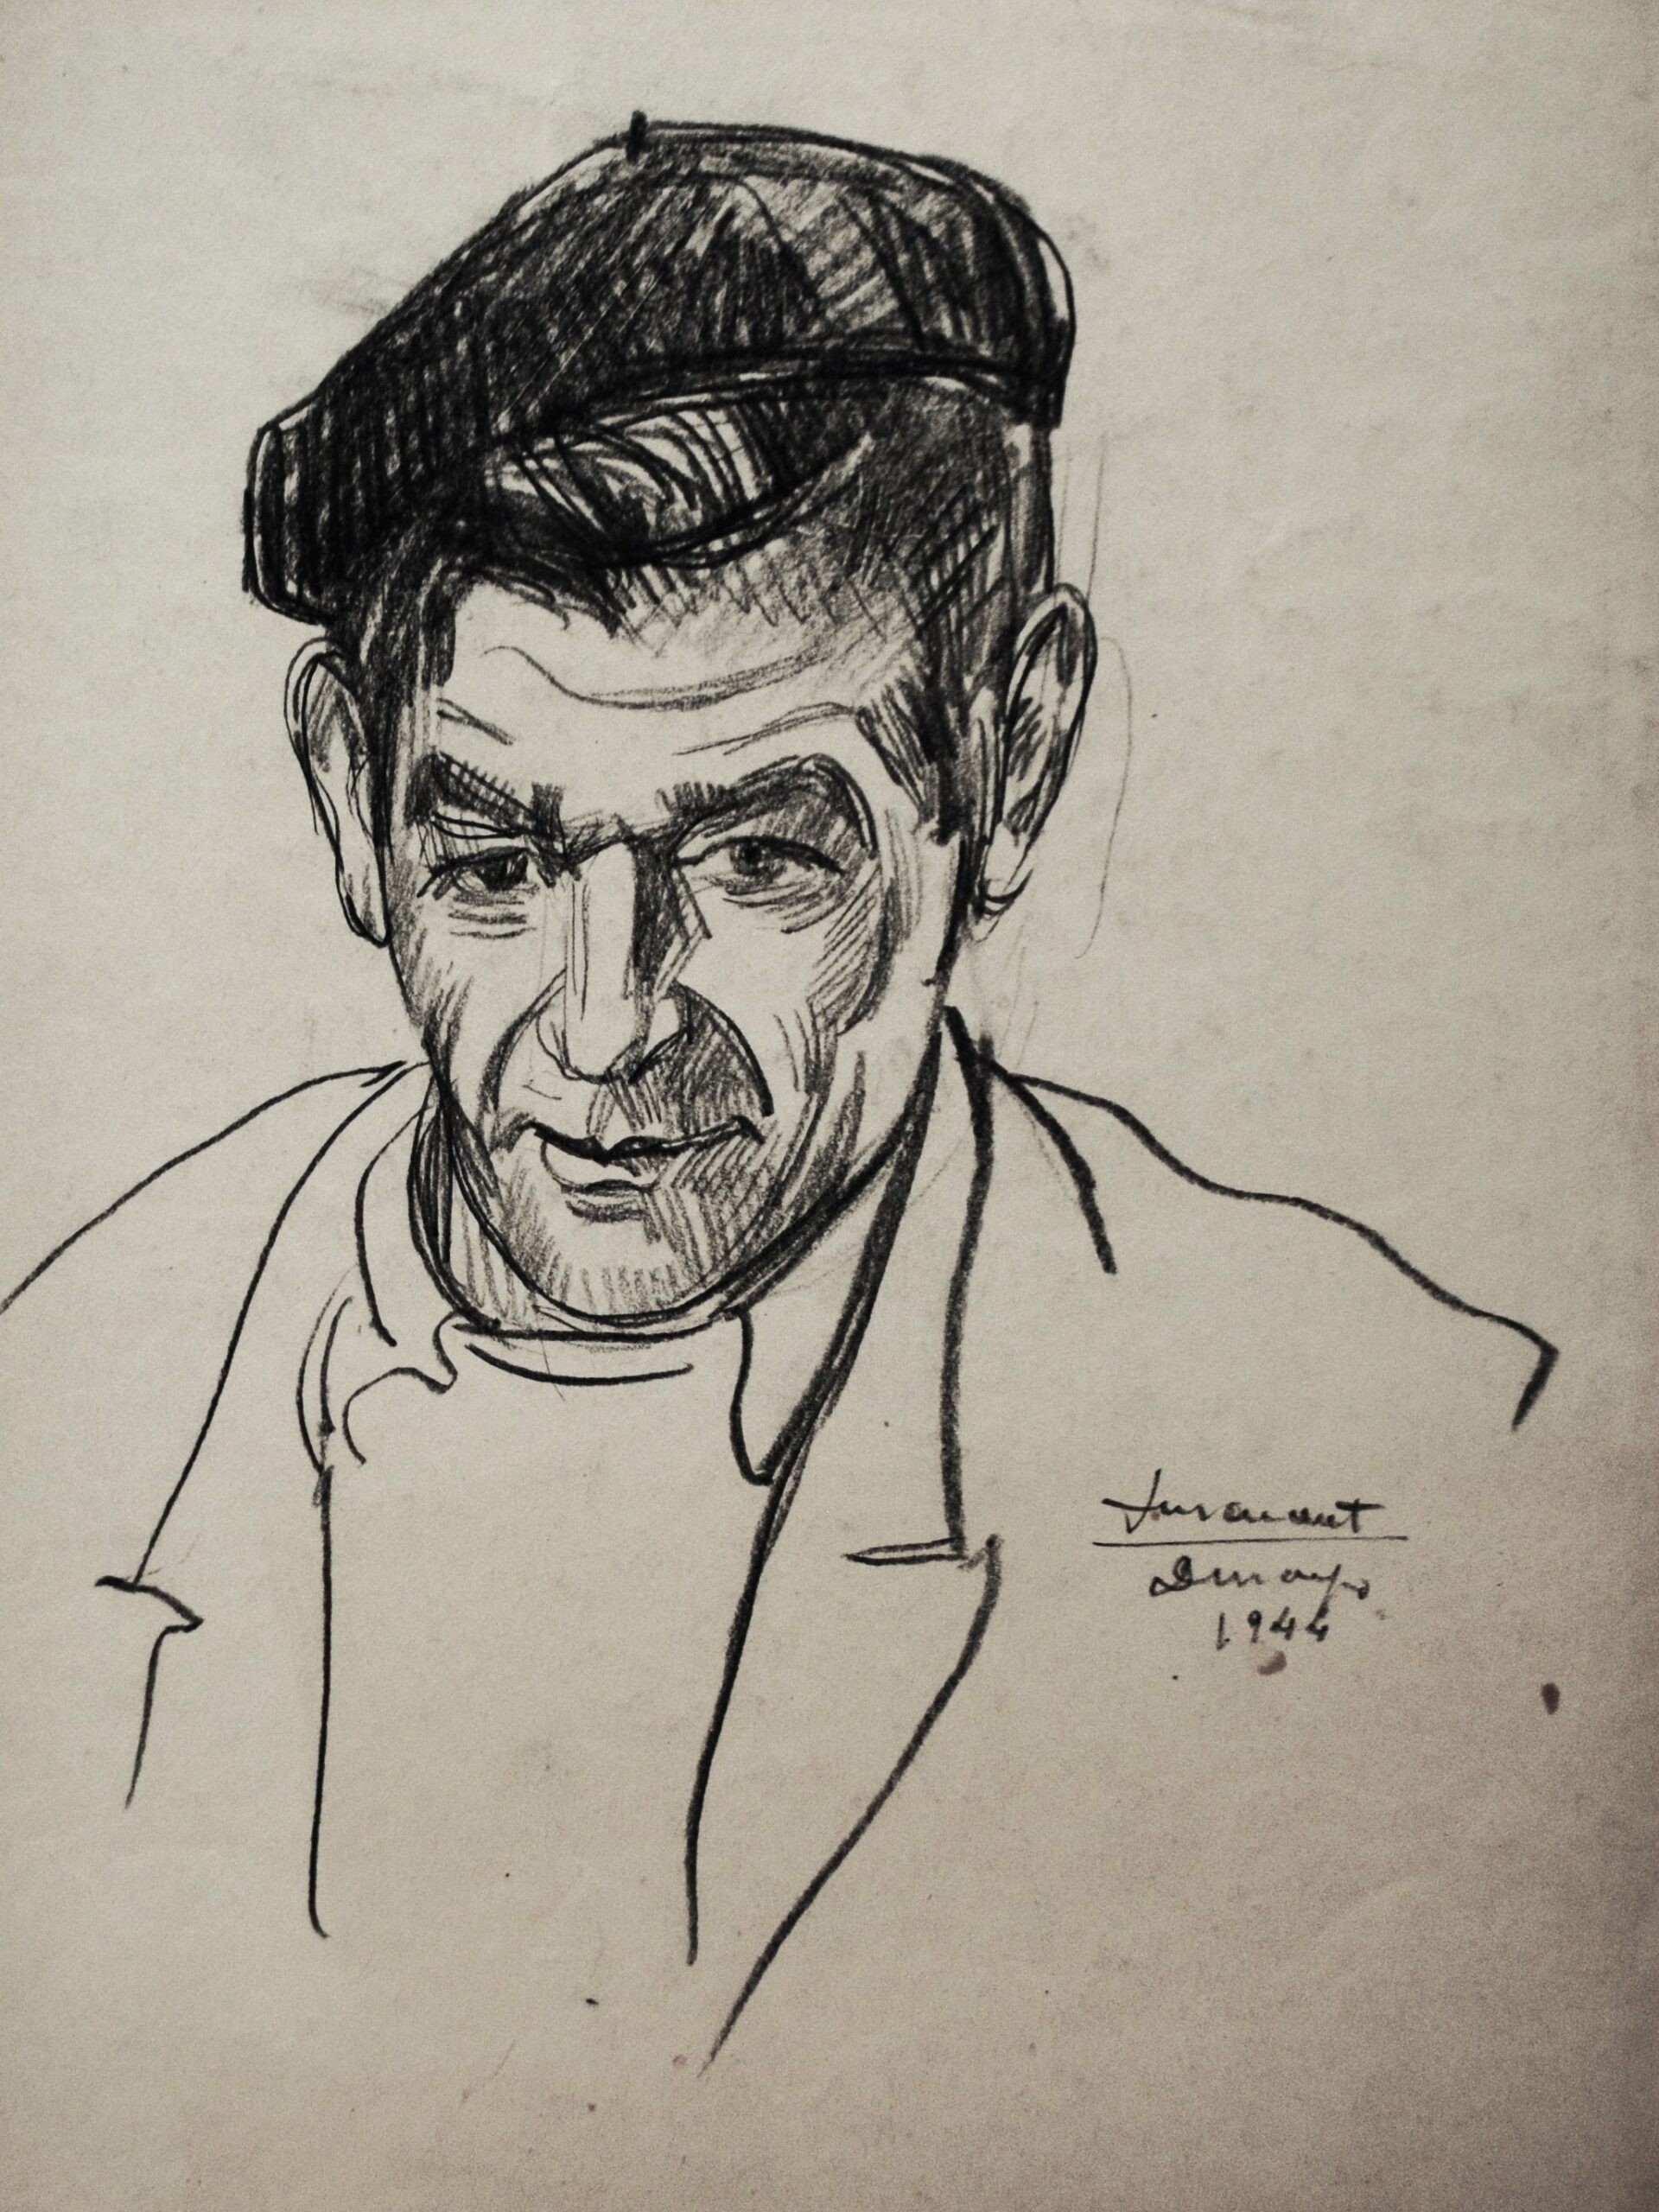 Dibujo de José Manaut sin título, 1944. Carboncillo sobre papel.